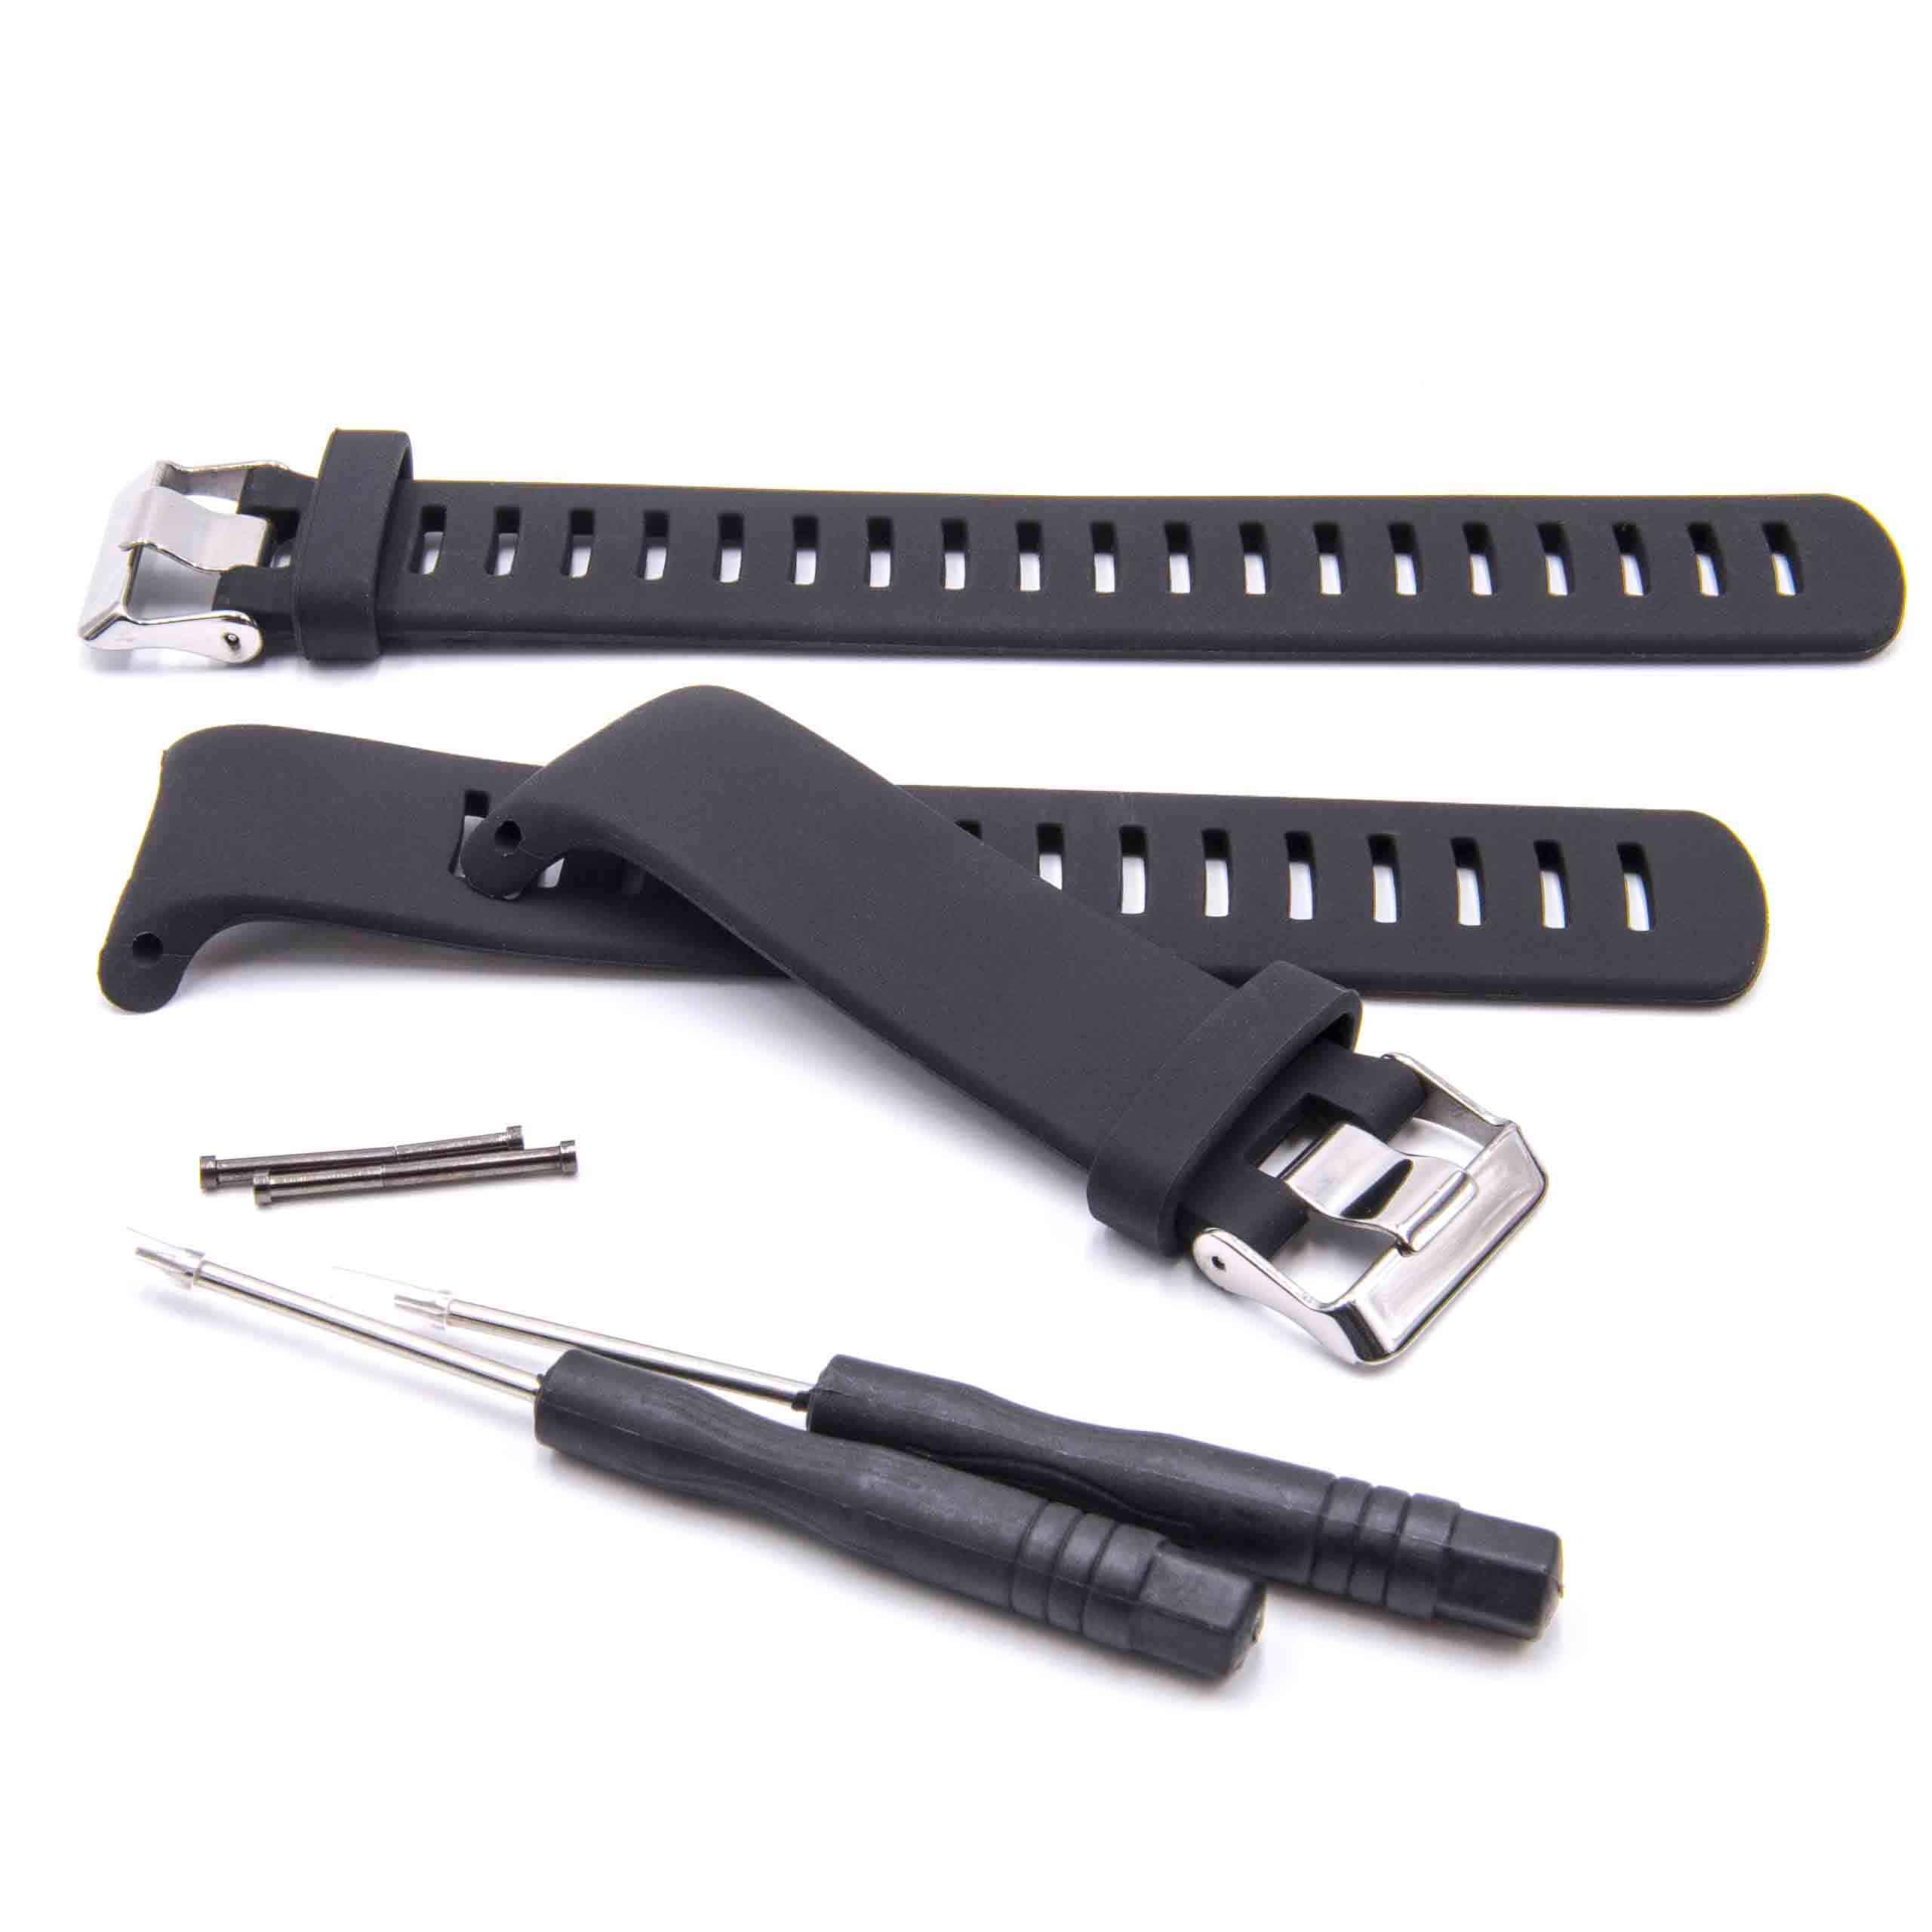 Armband für Suunto Smartwatch - 16.3cm + 13,2 cm lang, 23mm breit, schwarz